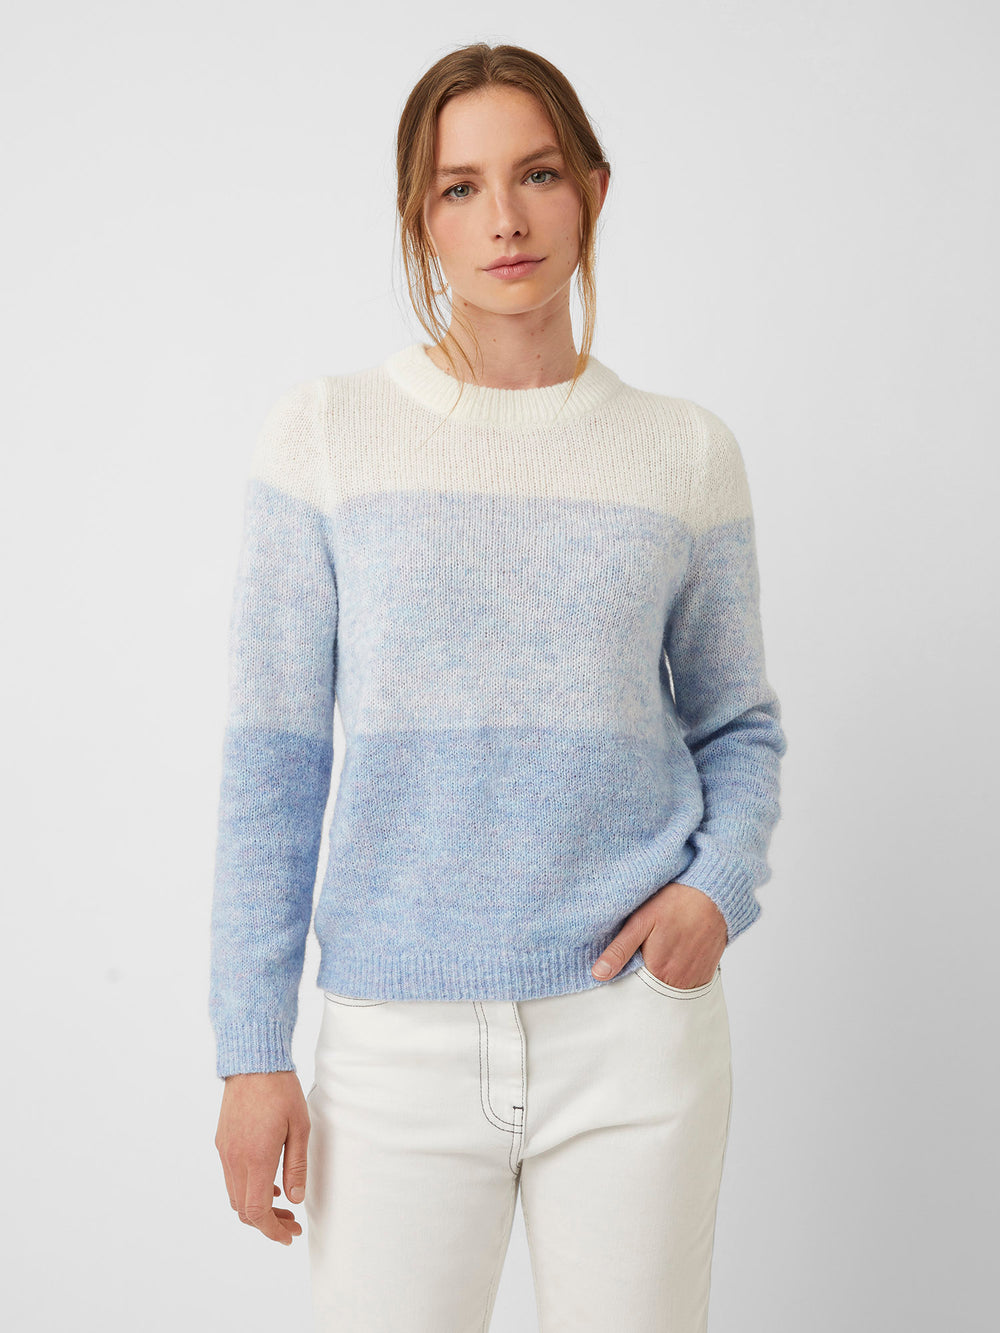 18+ Light Blue Women'S Sweater